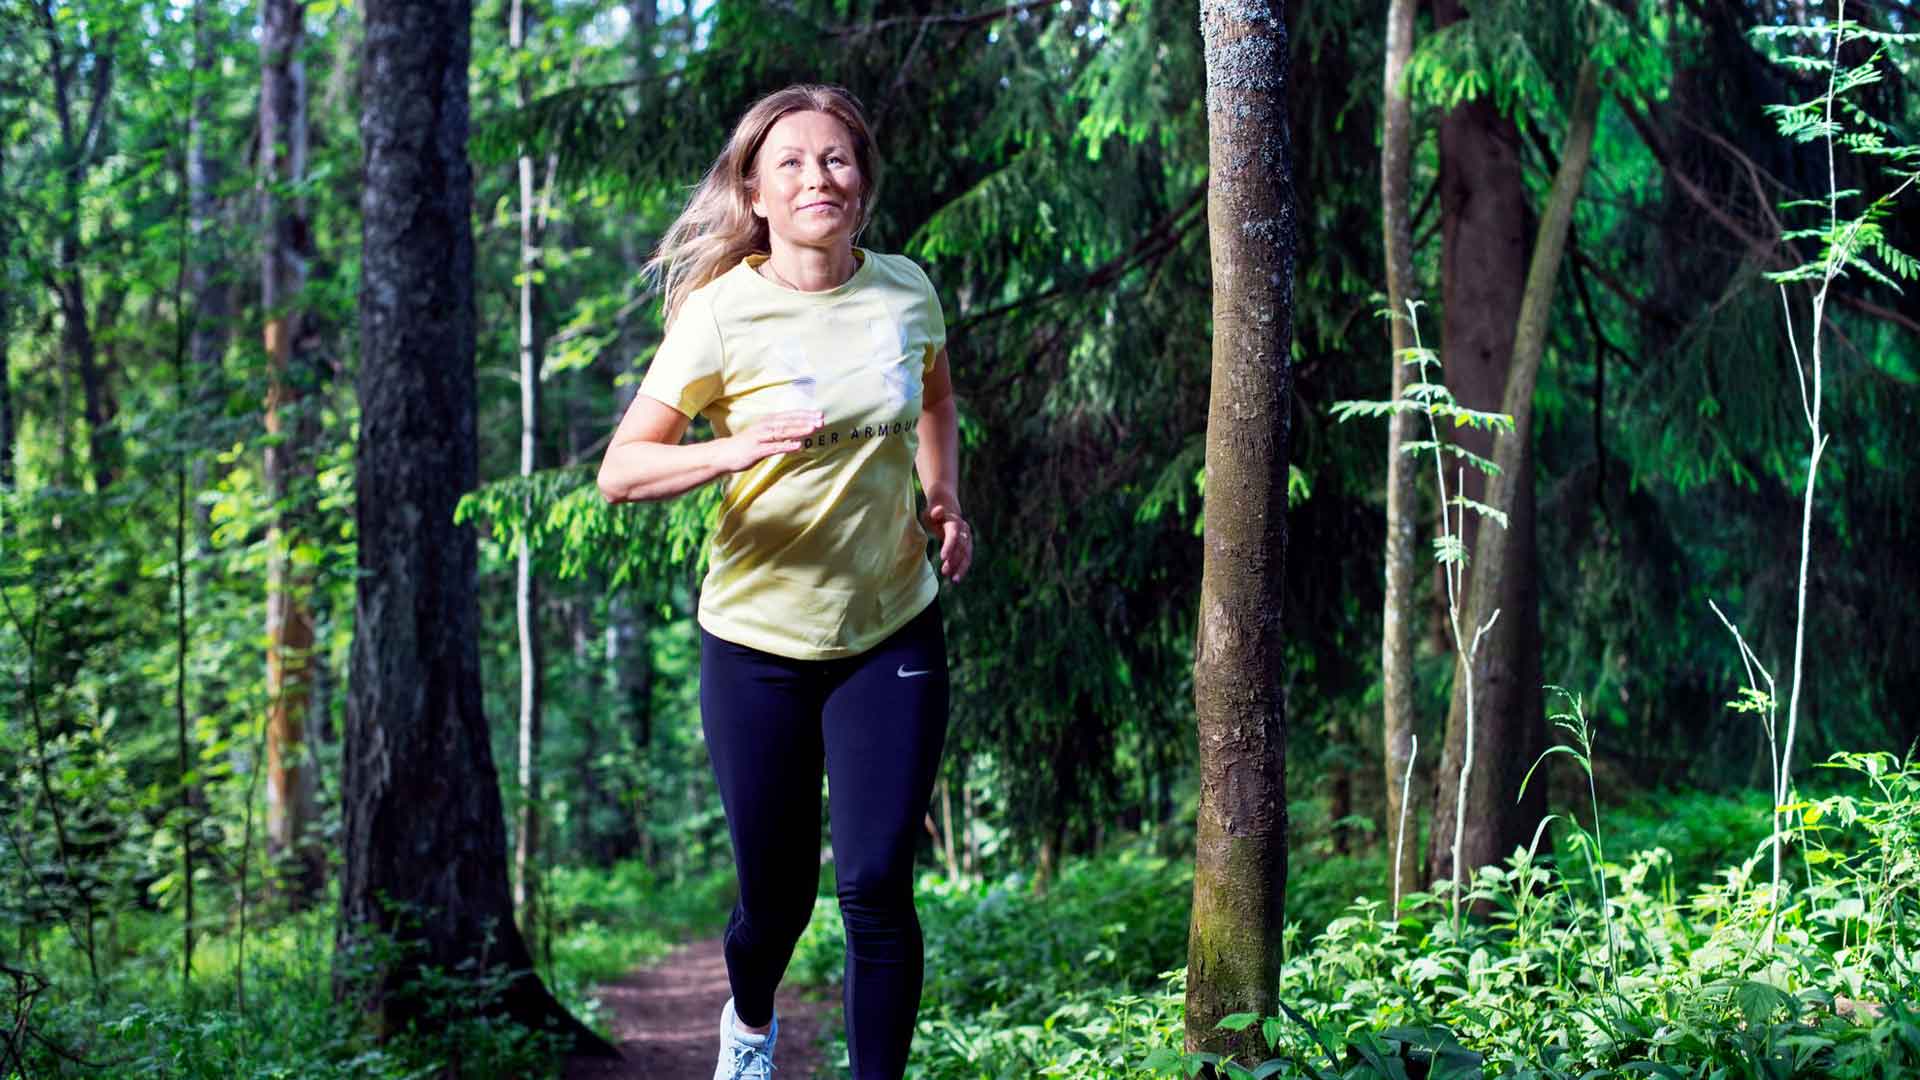 ”On upea tunne pystyä juoksemaan monen kuukauden toipumisen jälkeen”, Miira Laulajainen sanoo nyt, kun borrelioosi on vihdoin voitettu.